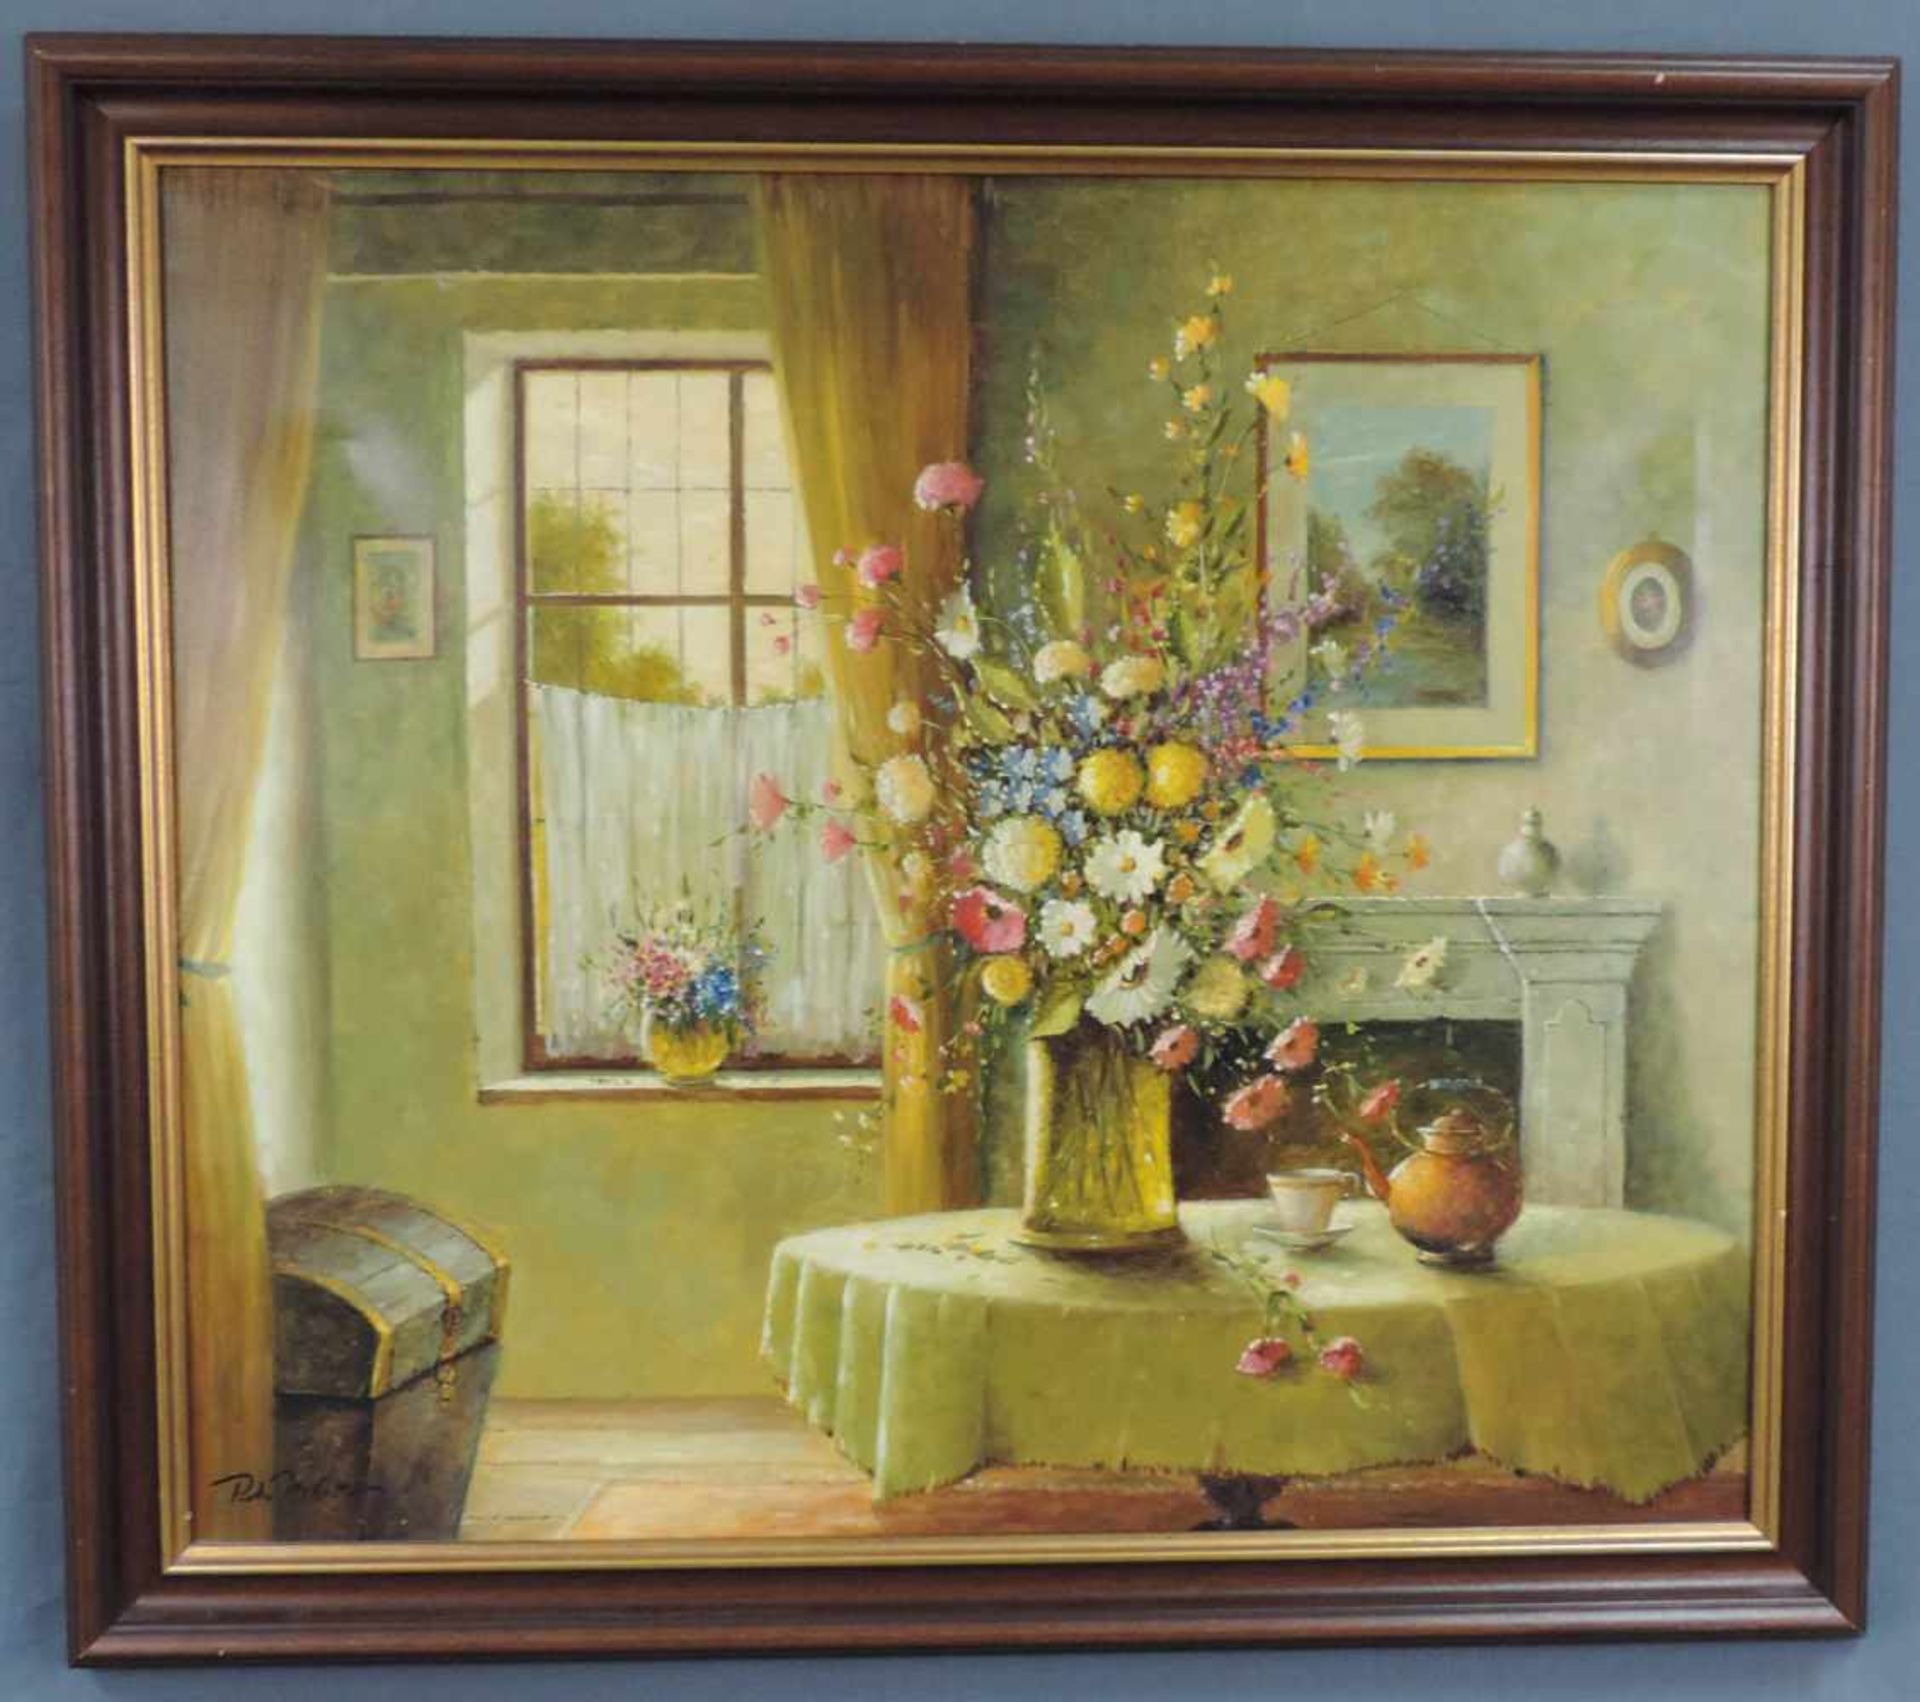 Peter MEHNER (1944 -). Interieur mit Sommerblumenstrauß. 60 cm x 70 cm. Gemälde. Öl auf Leinwand. - Bild 2 aus 5